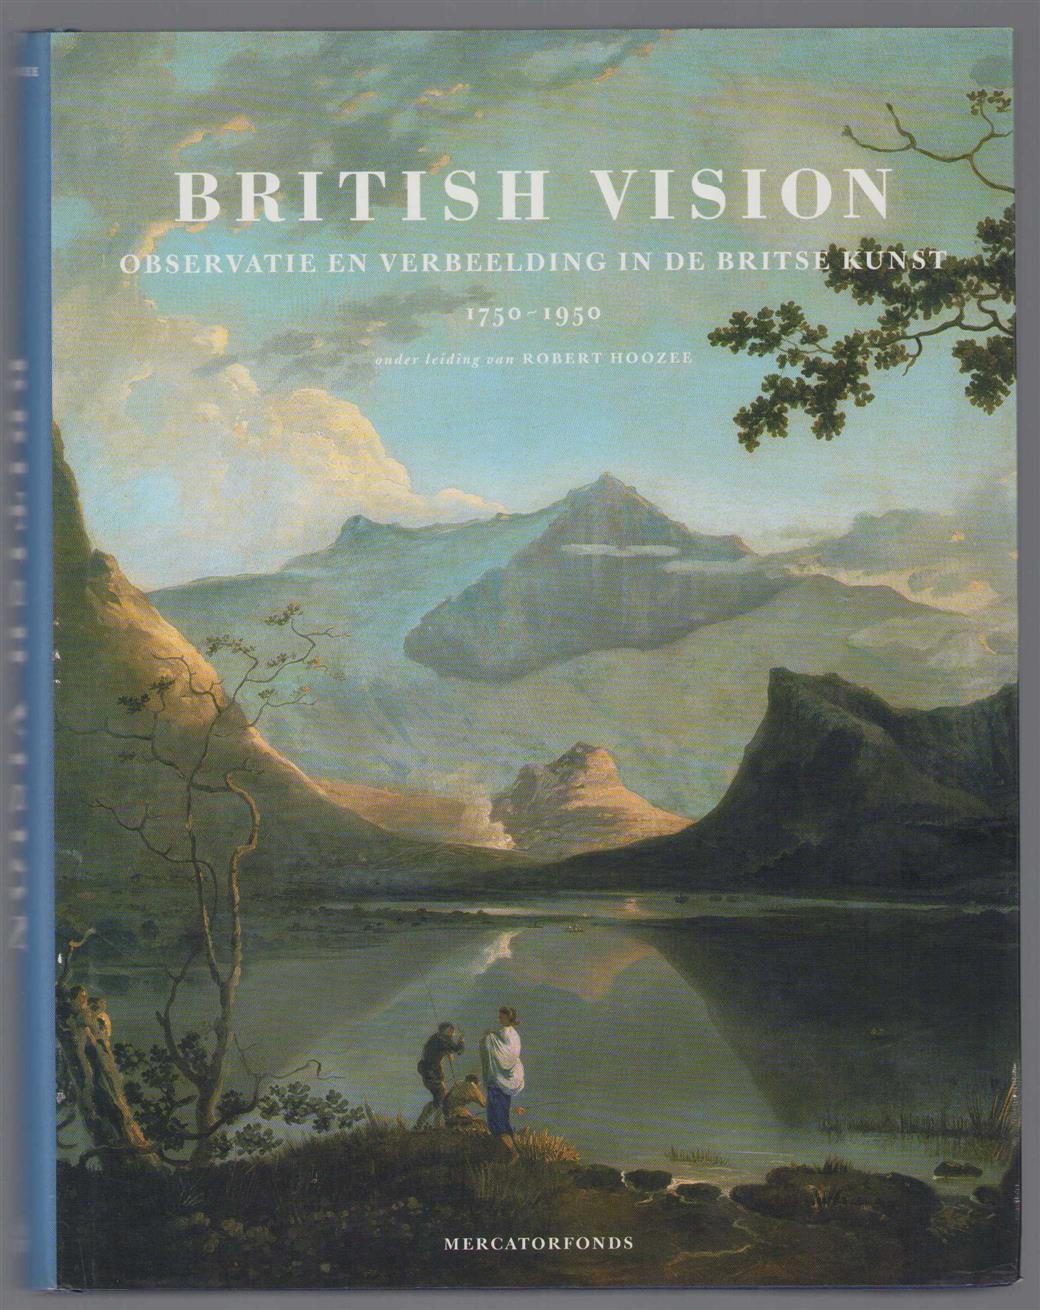 Hoozee, Robert, Gage, John, Pauwels, Hilde, Museum voor Schone Kunsten - British vision, observatie en verbeelding in de Britse kunst, 1750-1950